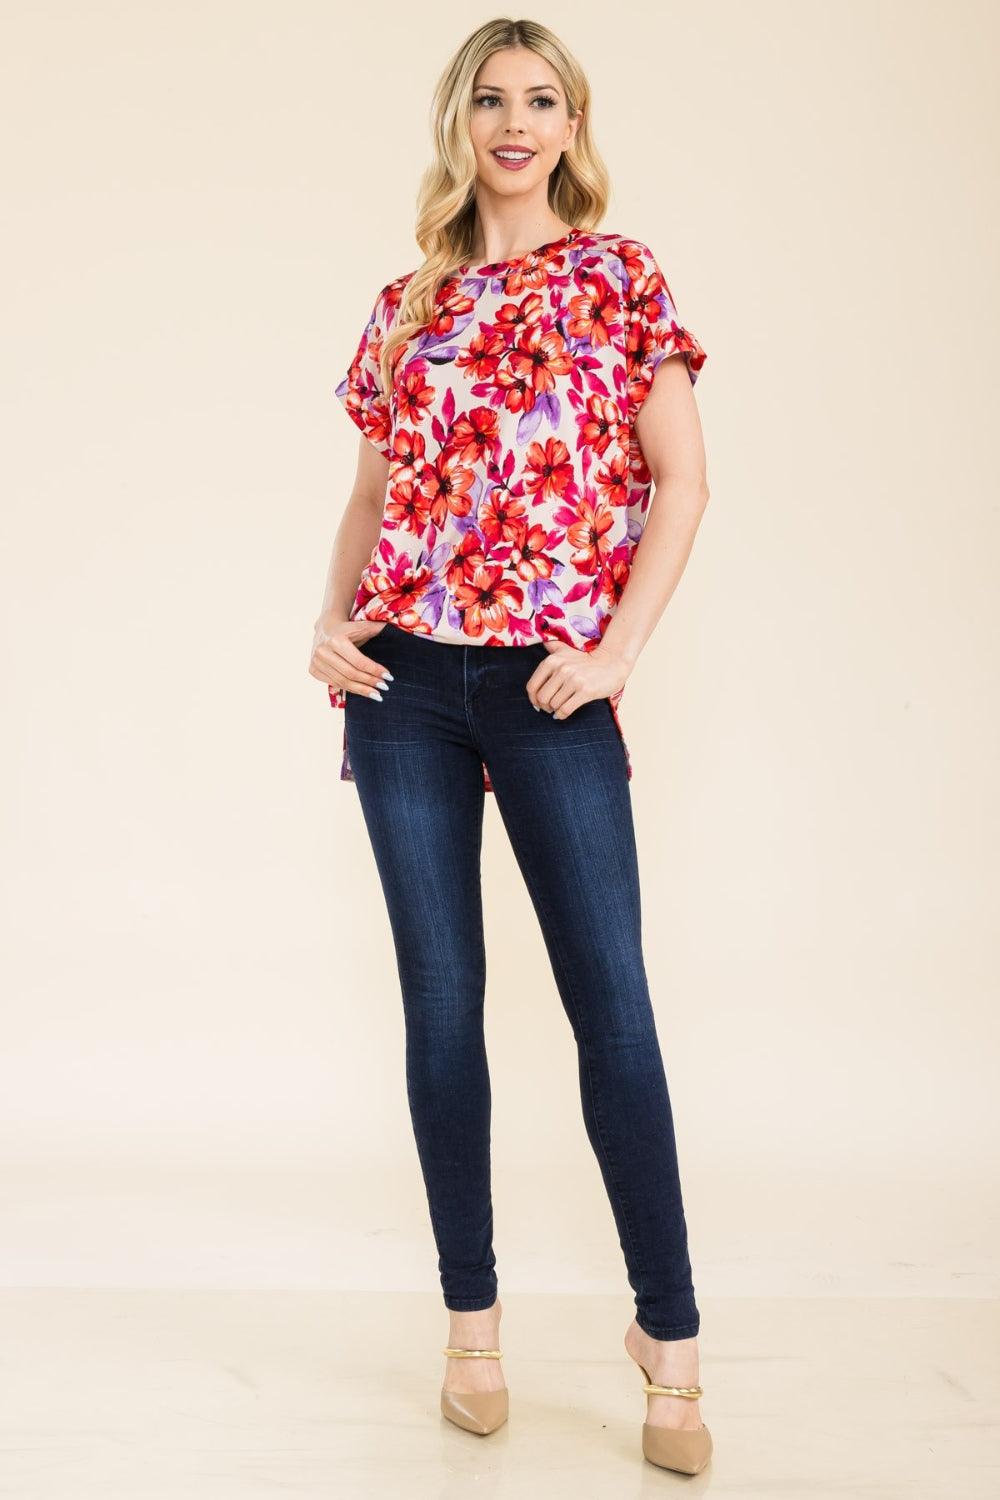 Celeste Full Size Round Neck Short Sleeve Floral T-Shirt - Immenzive